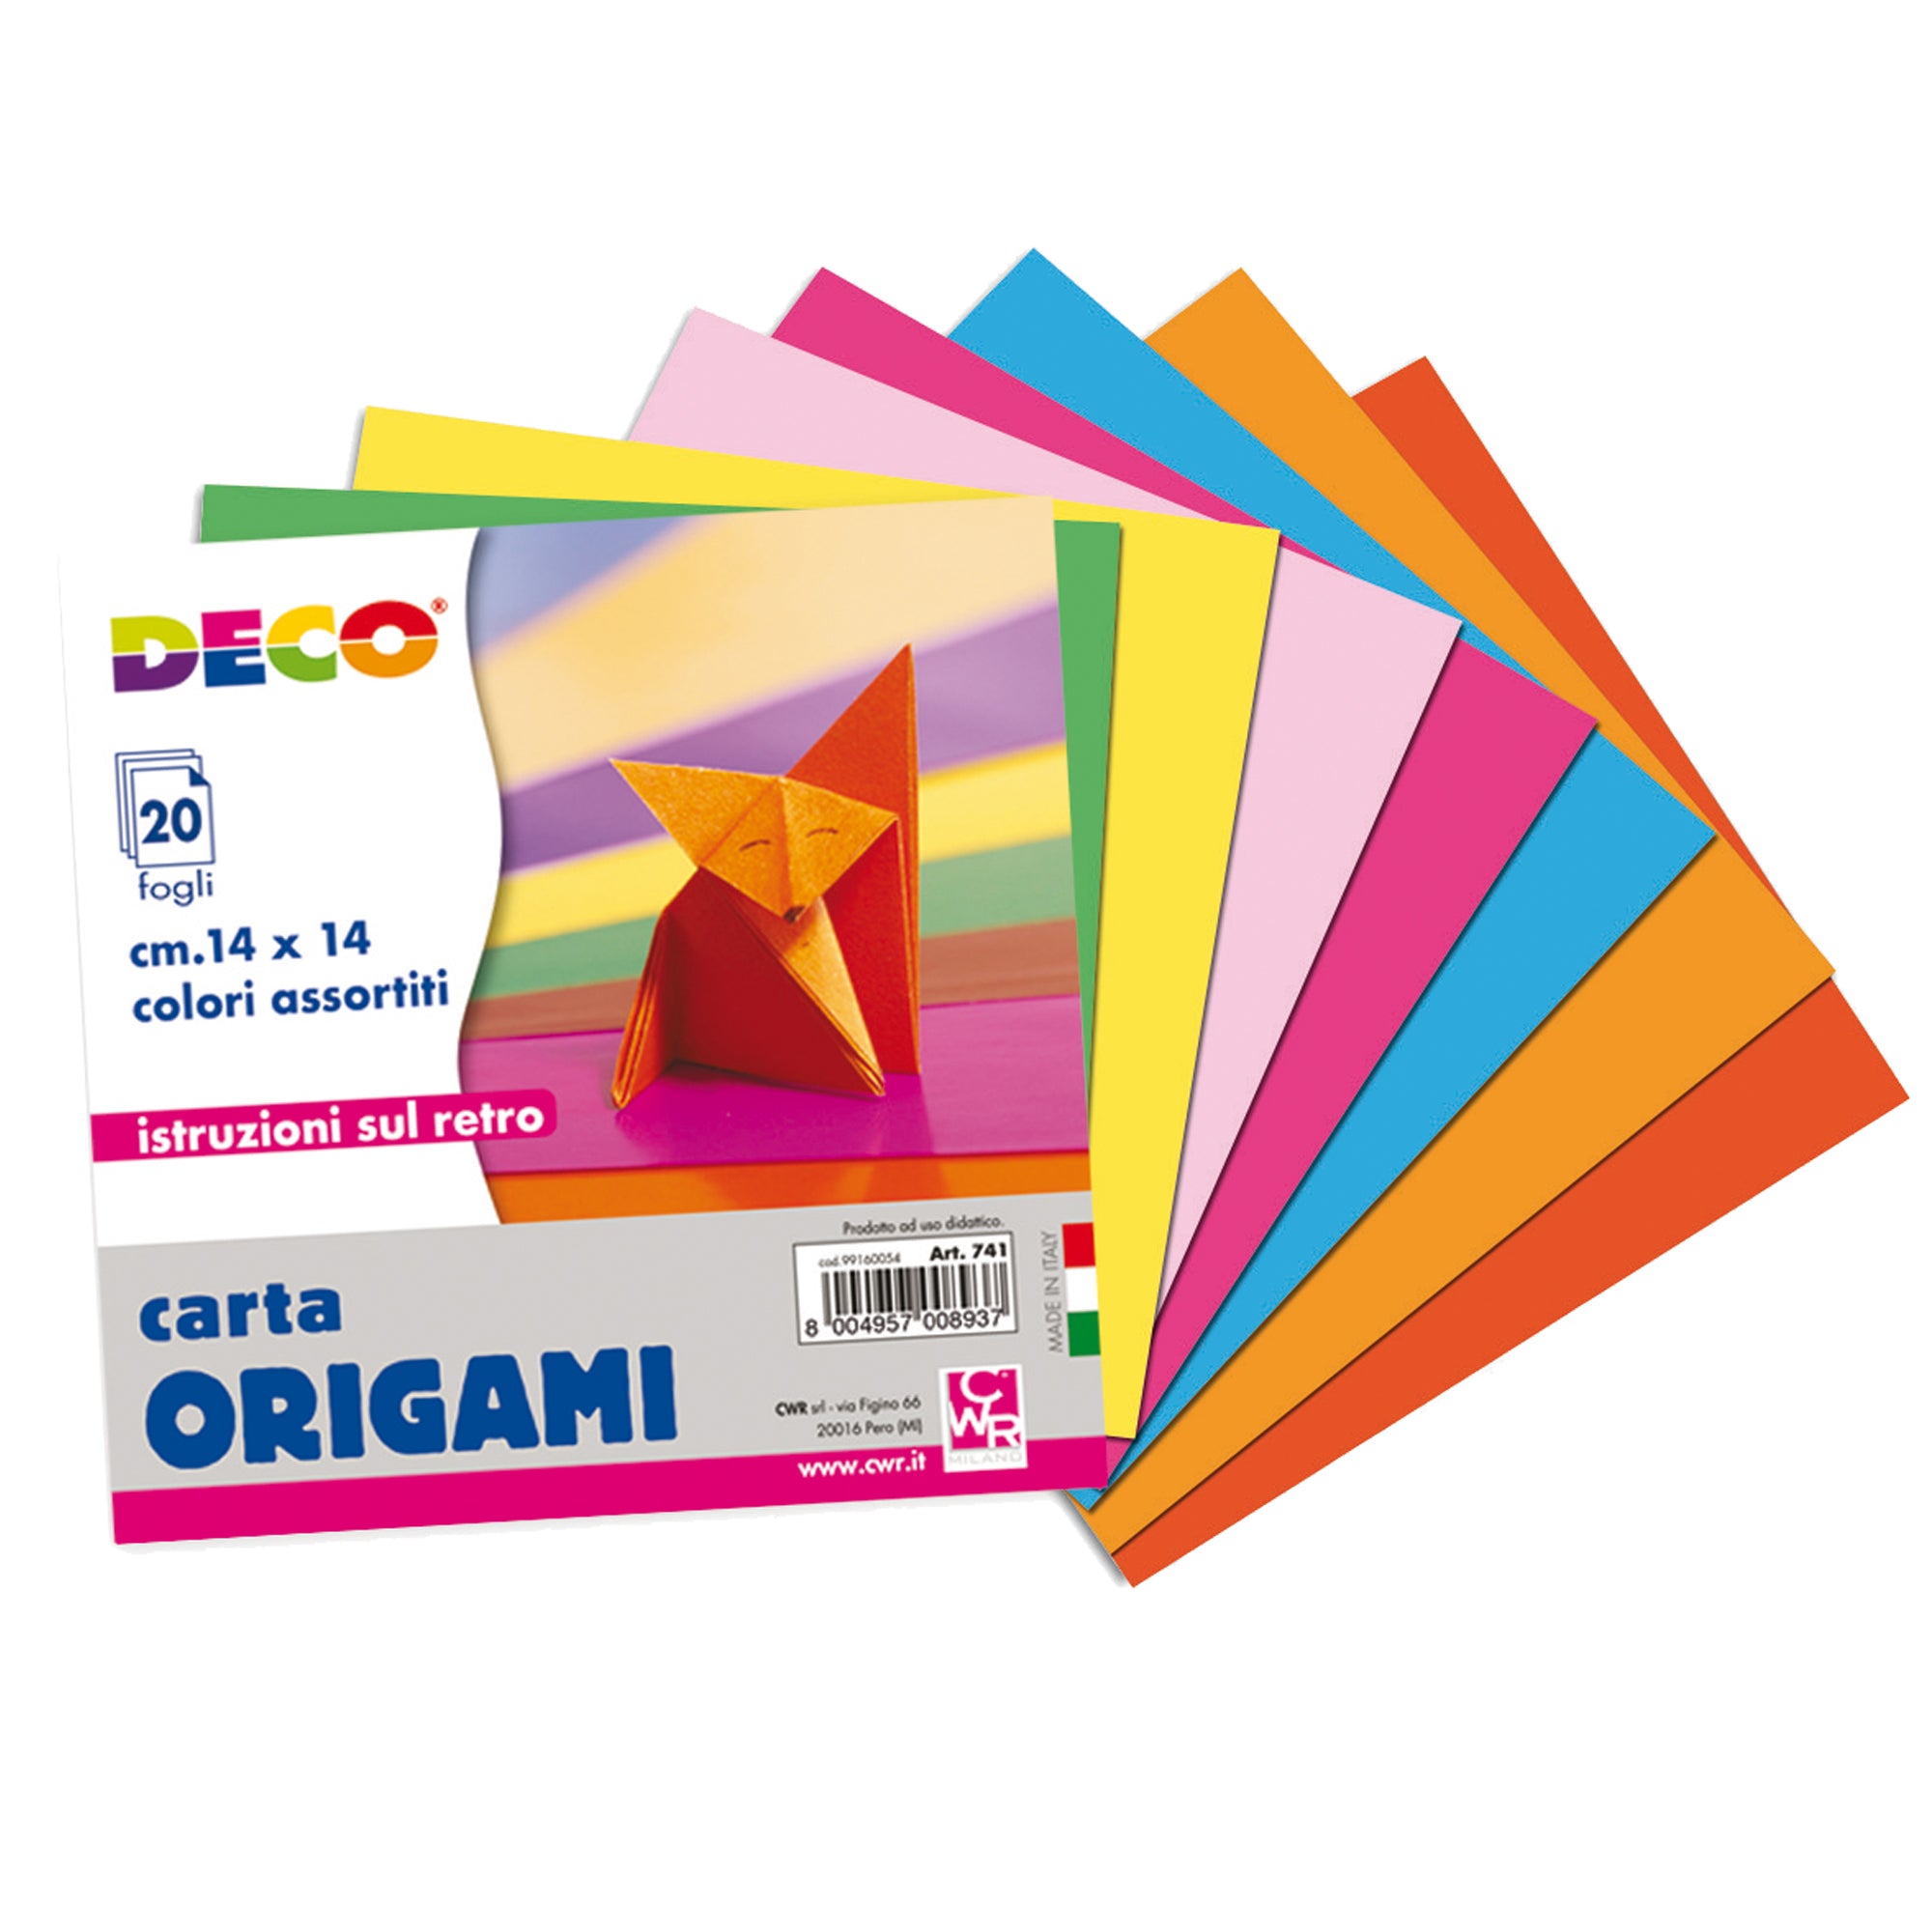 deco-confezione-20-fogli-carta-origami-14x14cm-colori-assortiti